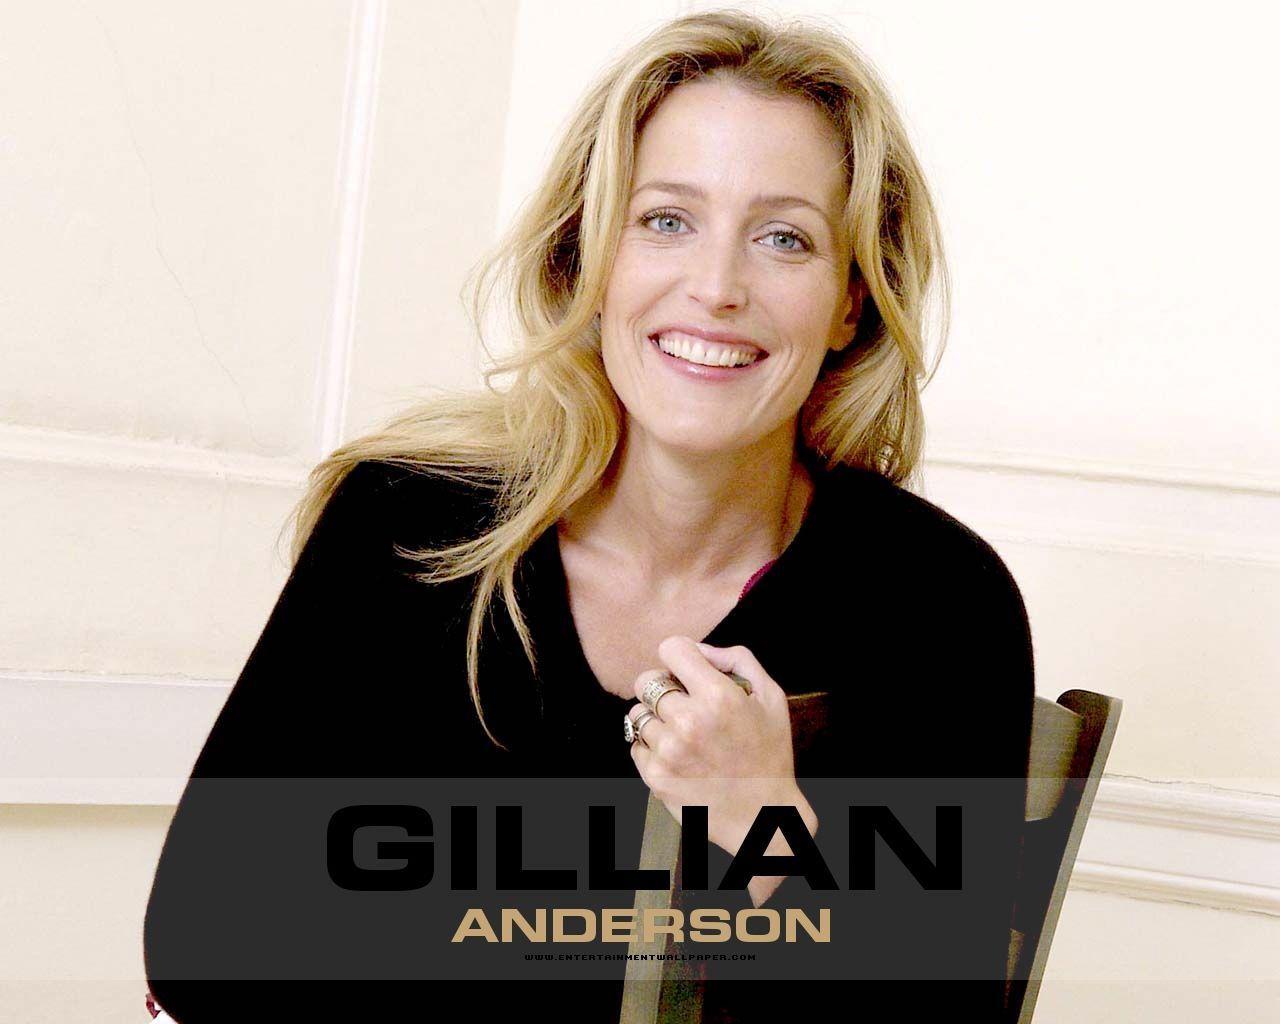 Gillian Anderson Anderson Wallpaper